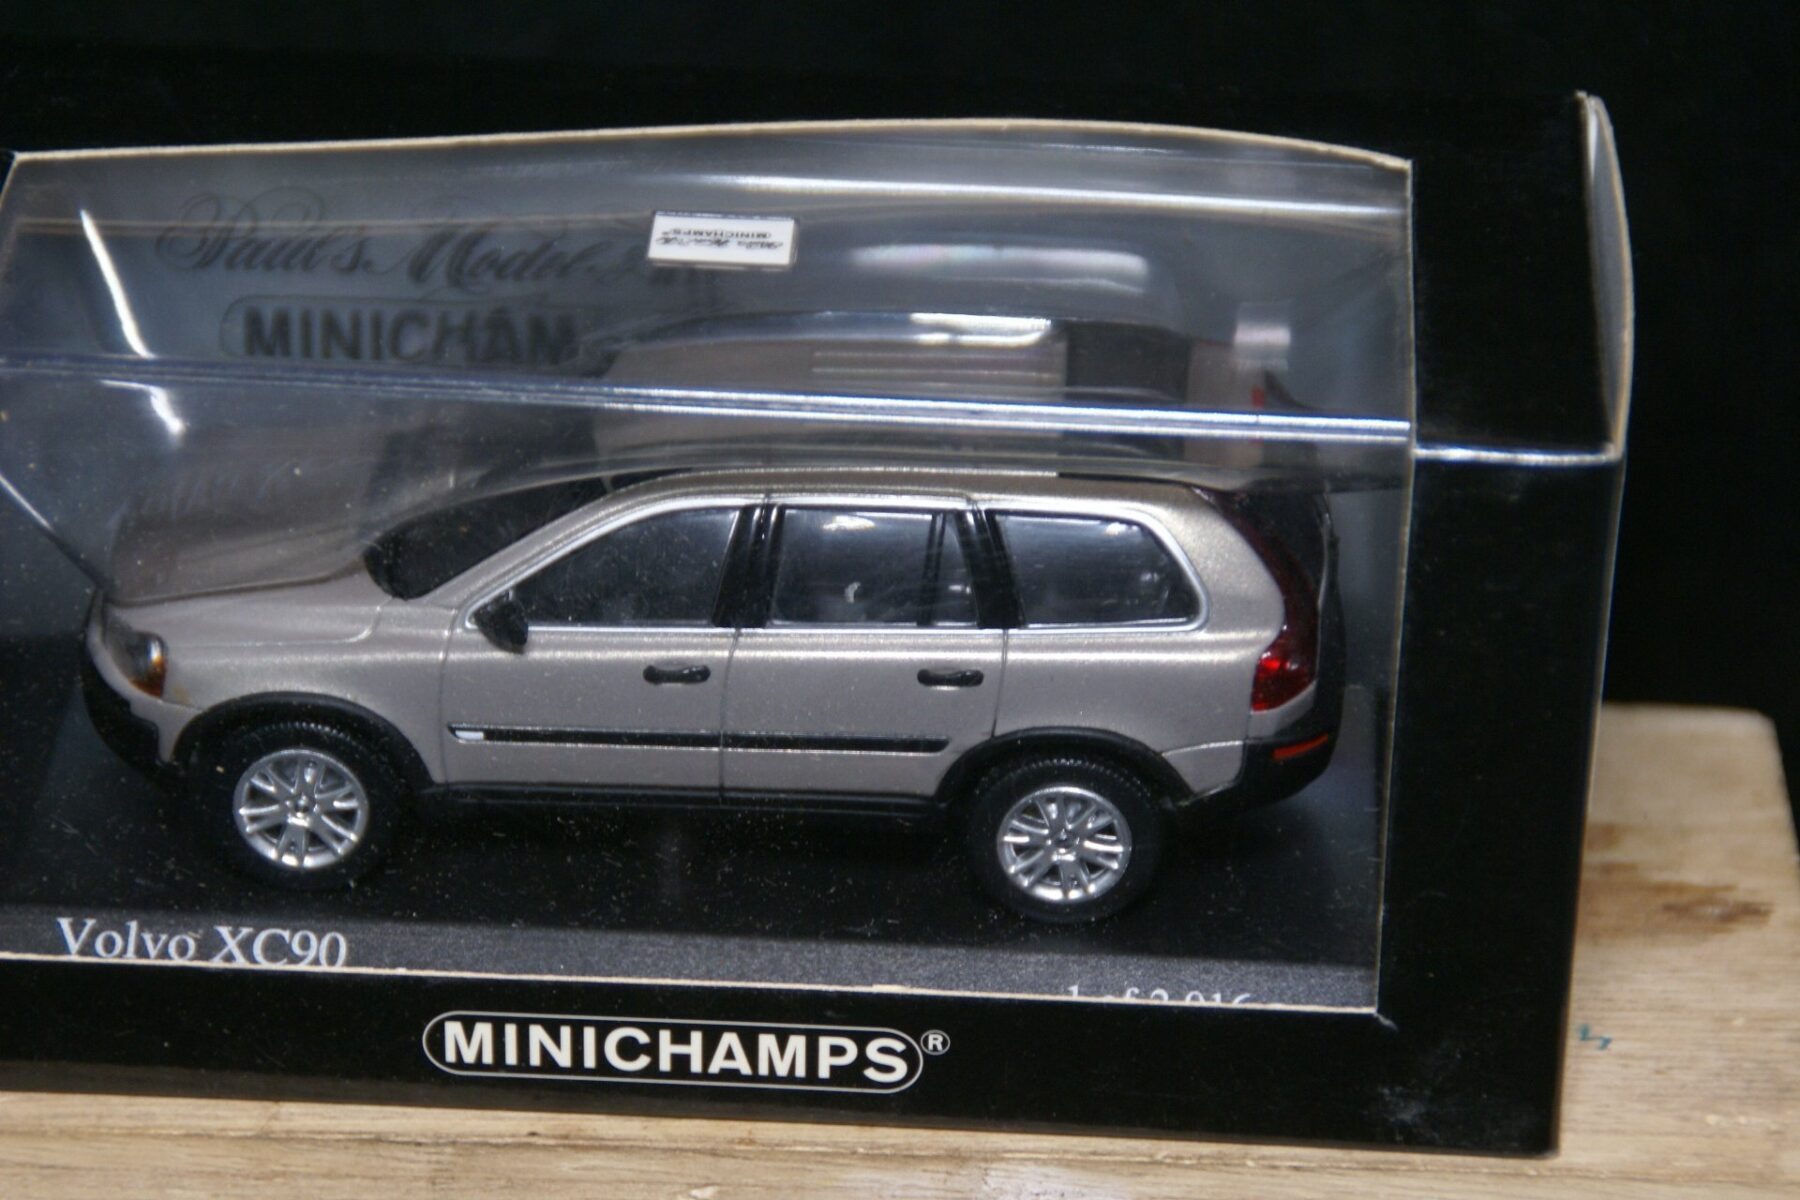 DSC05508 miniatuur 2003 Volvo XC90 grijs 1op43 Minichamps 171212 1 van 2016 MB